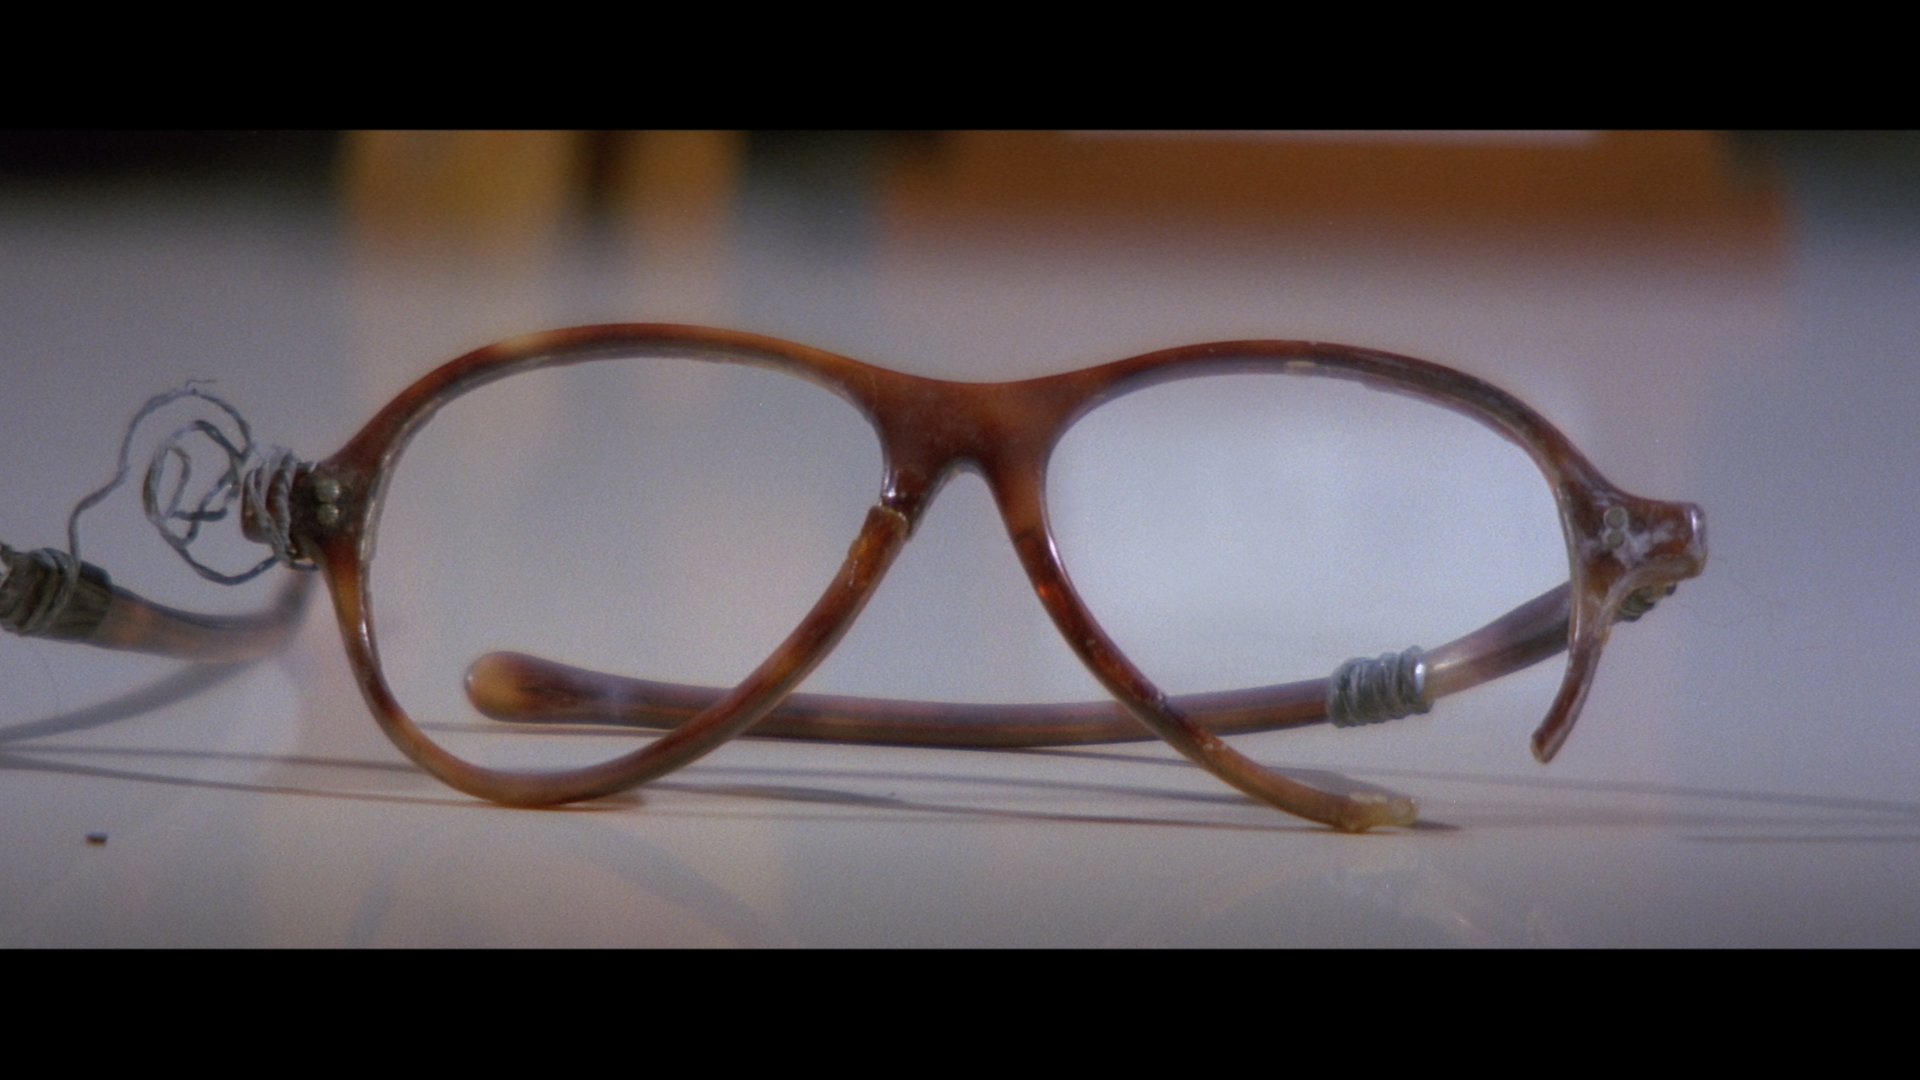 李小龙用以自勉的破损眼镜1973年星空华文传媒电影有限公司提供1960年代末至70年代初，李小龙一家生活拮据，曾经连一副新的眼镜也未能负担，只能修补破损的镜臂。回港发展後，李小龙声名鹊起，走出困局，对破损眼镜珍而重之，用以时刻勉励自己，成功得来不易。